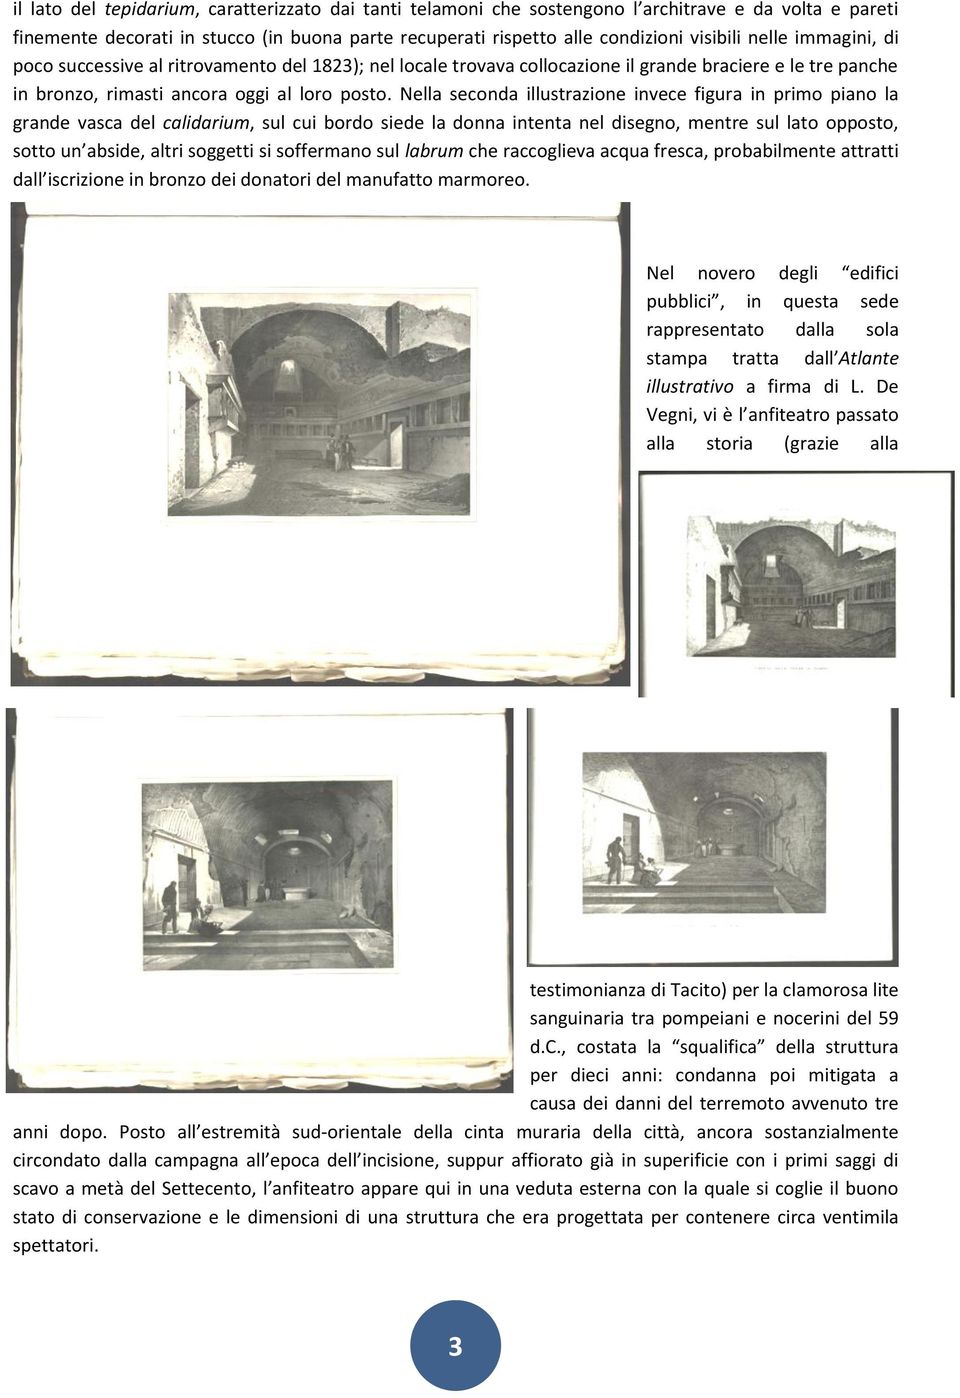 Nella seconda illustrazione invece figura in primo piano la grande vasca del calidarium, sul cui bordo siede la donna intenta nel disegno, mentre sul lato opposto, sotto un abside, altri soggetti si